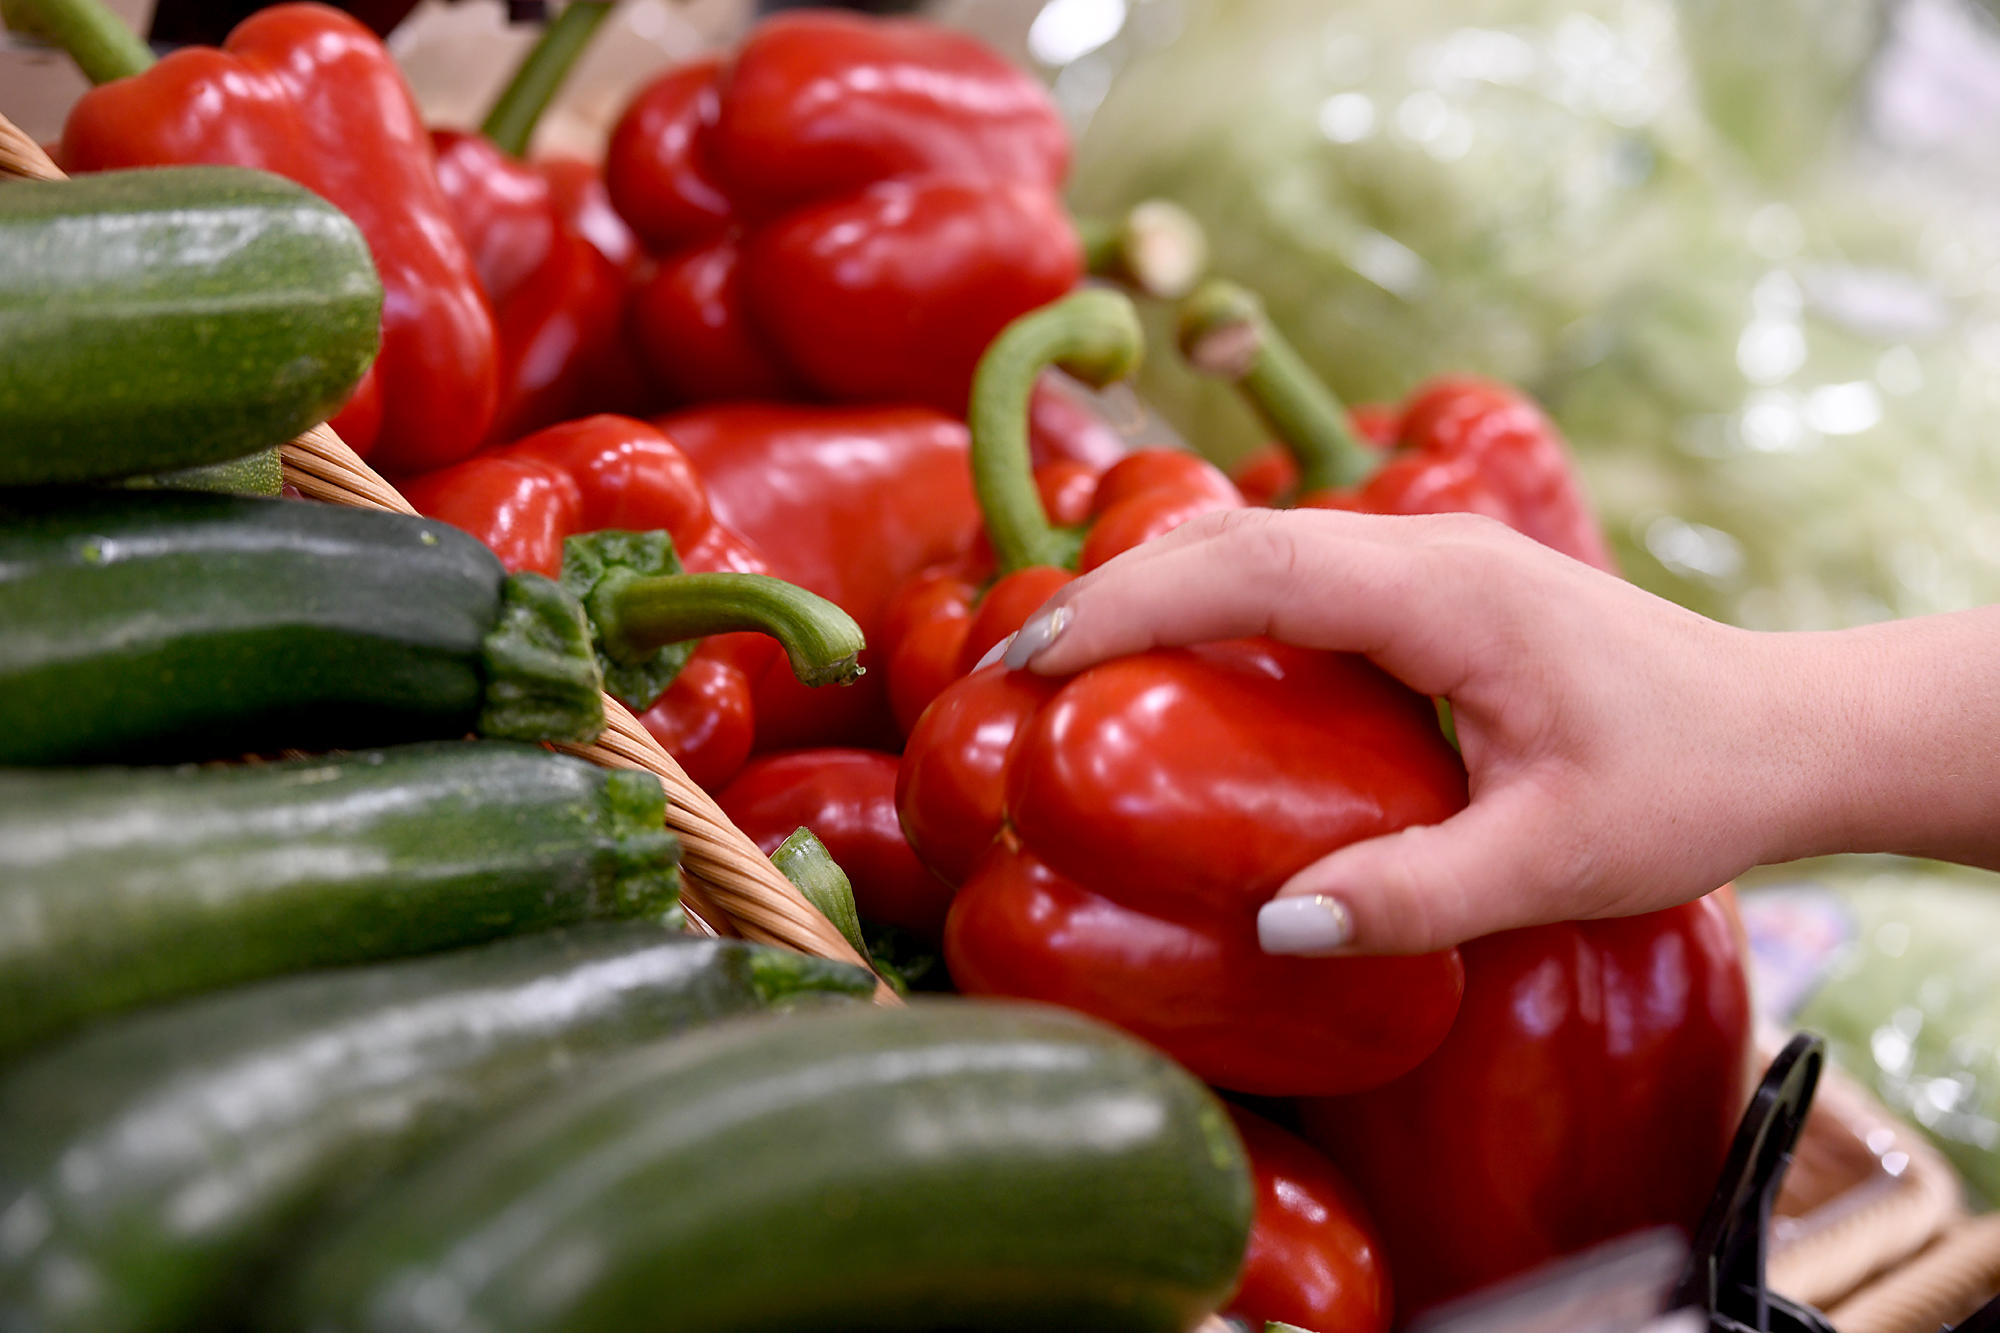 Obst- und Gemüseabteilung
Unser Obst und Gemüse werden täglich erntefrisch von EDEKA, sowie von unseren regionalen Lieferanten aus der Umgebung angeliefert.